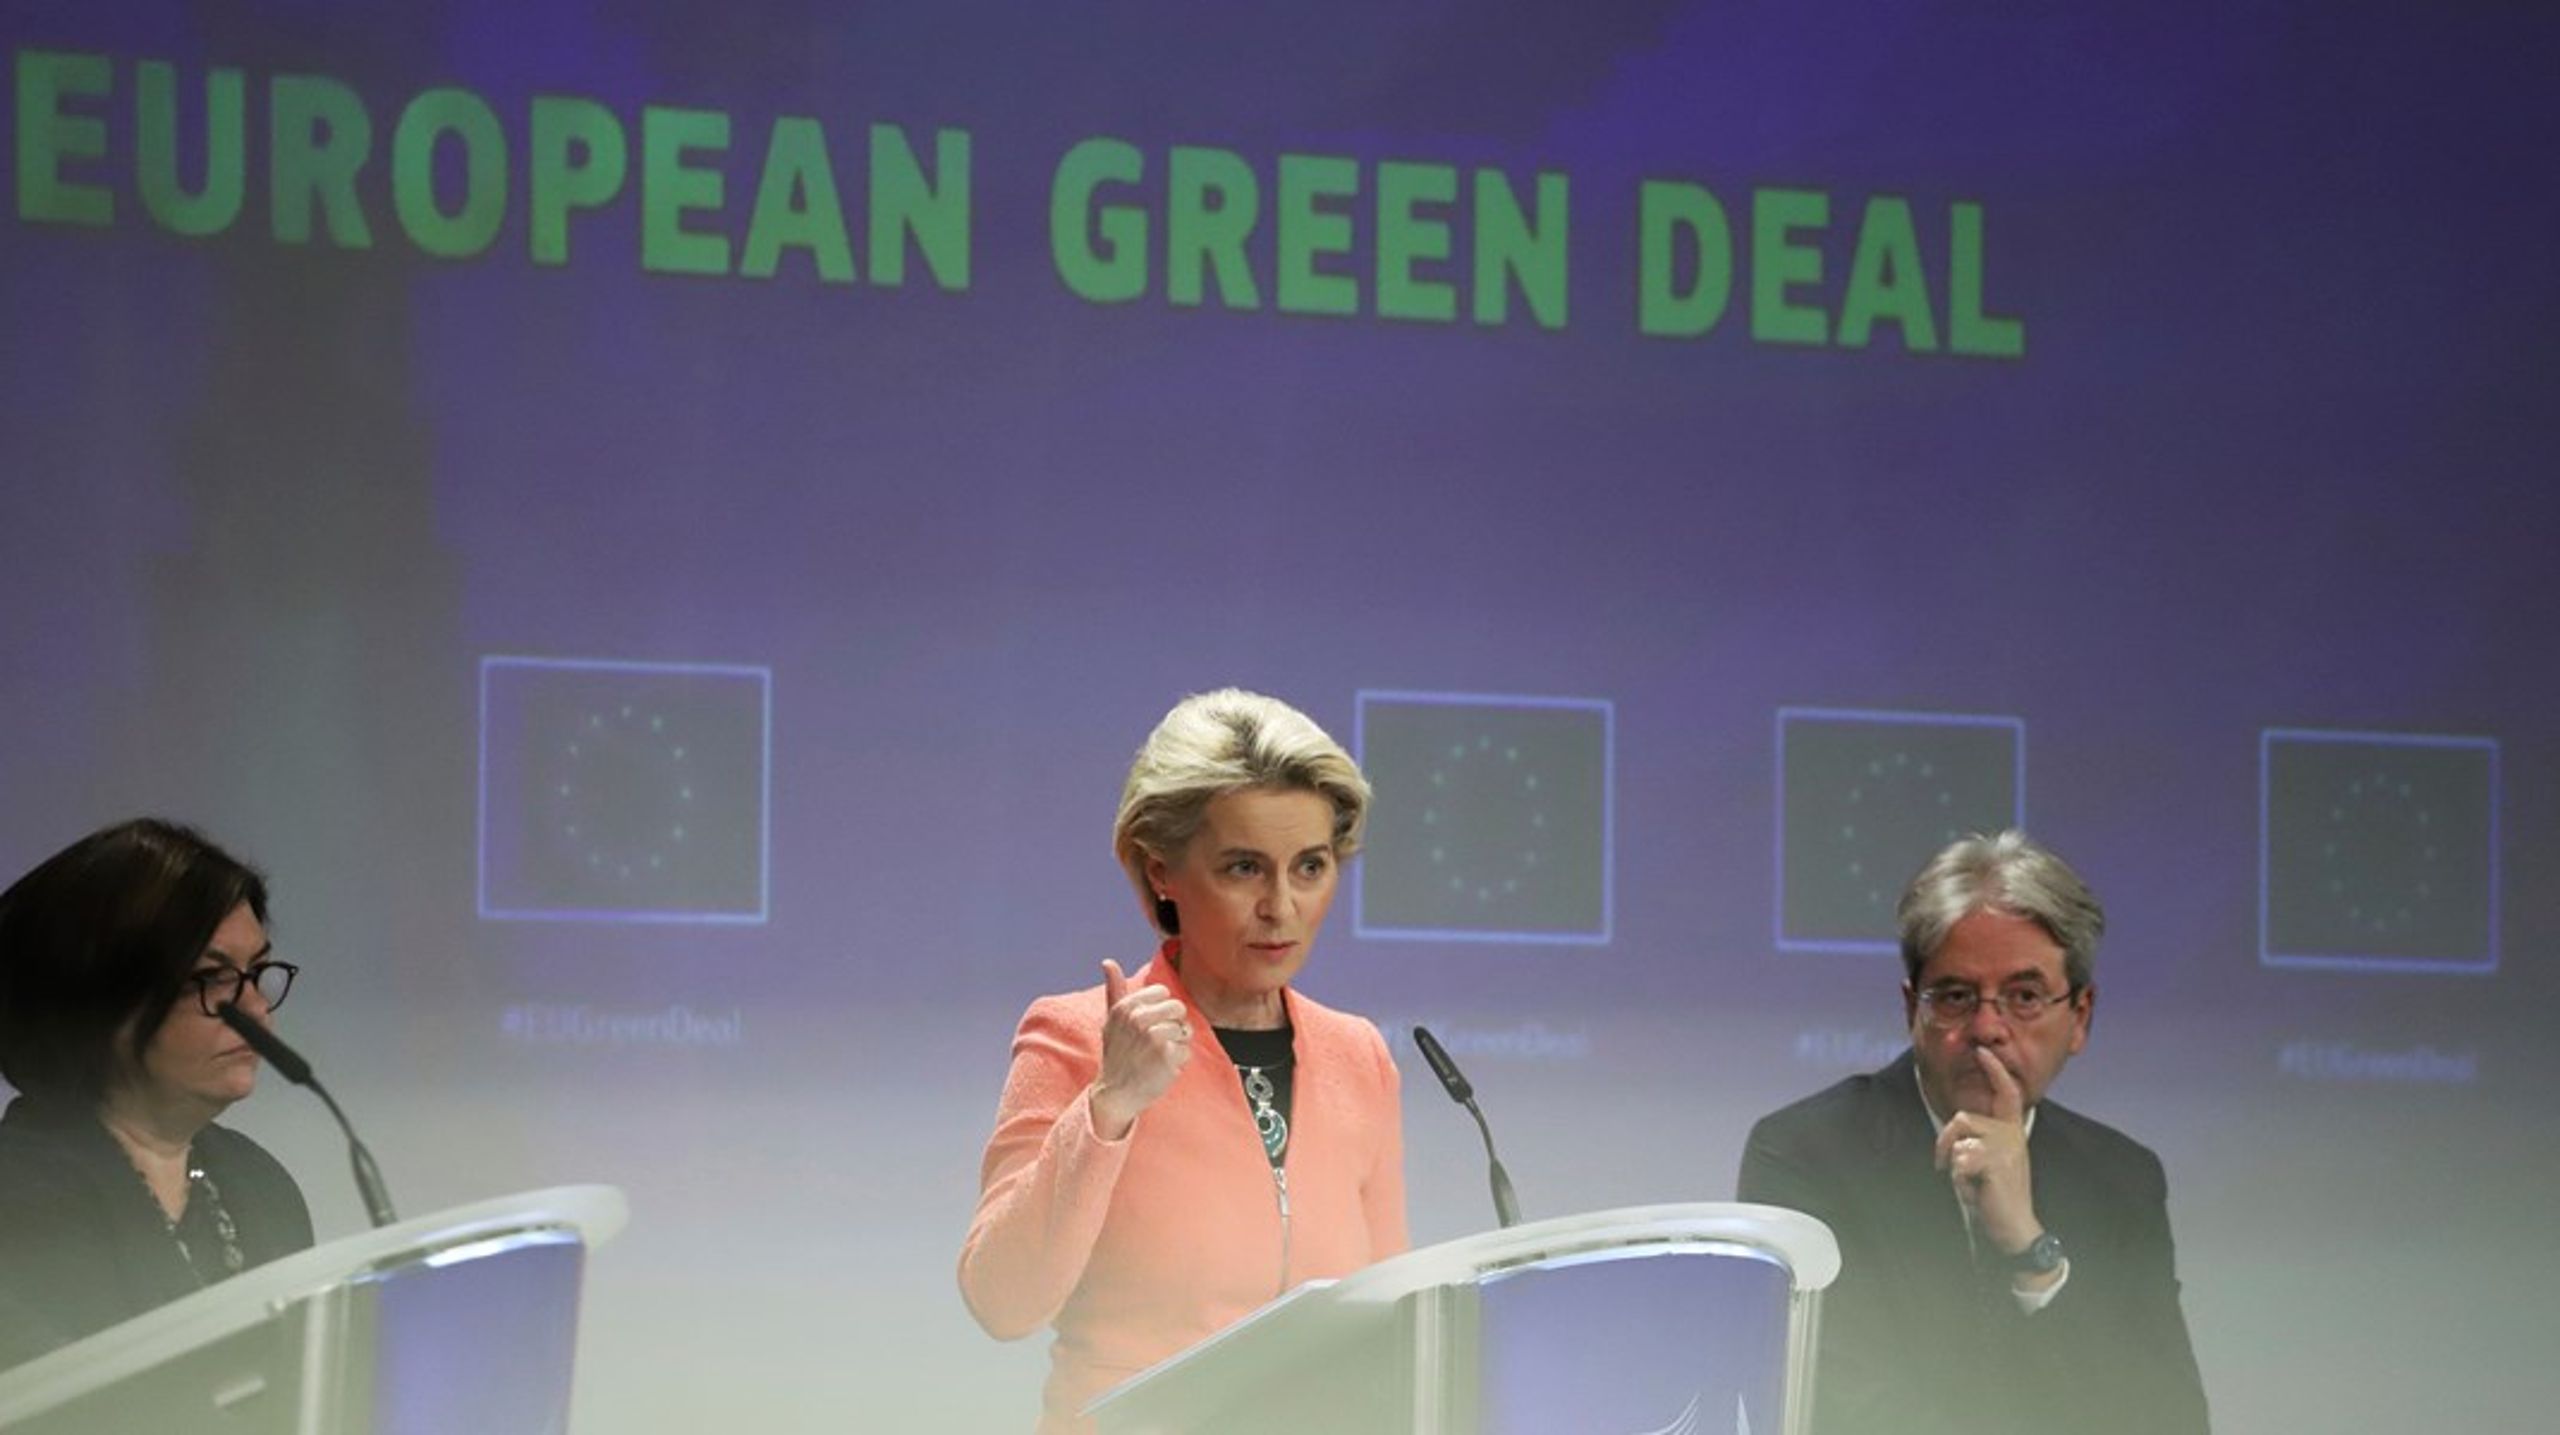 Mye vann har rent i havet siden Ursula von der Leyen som relativt ny kommisjonspresident var fadder og fødselshjelper for EUs grønne giv. Nå søker hun gjenvalg og det krever en nyfortolkning av den europeiske klimakampen.